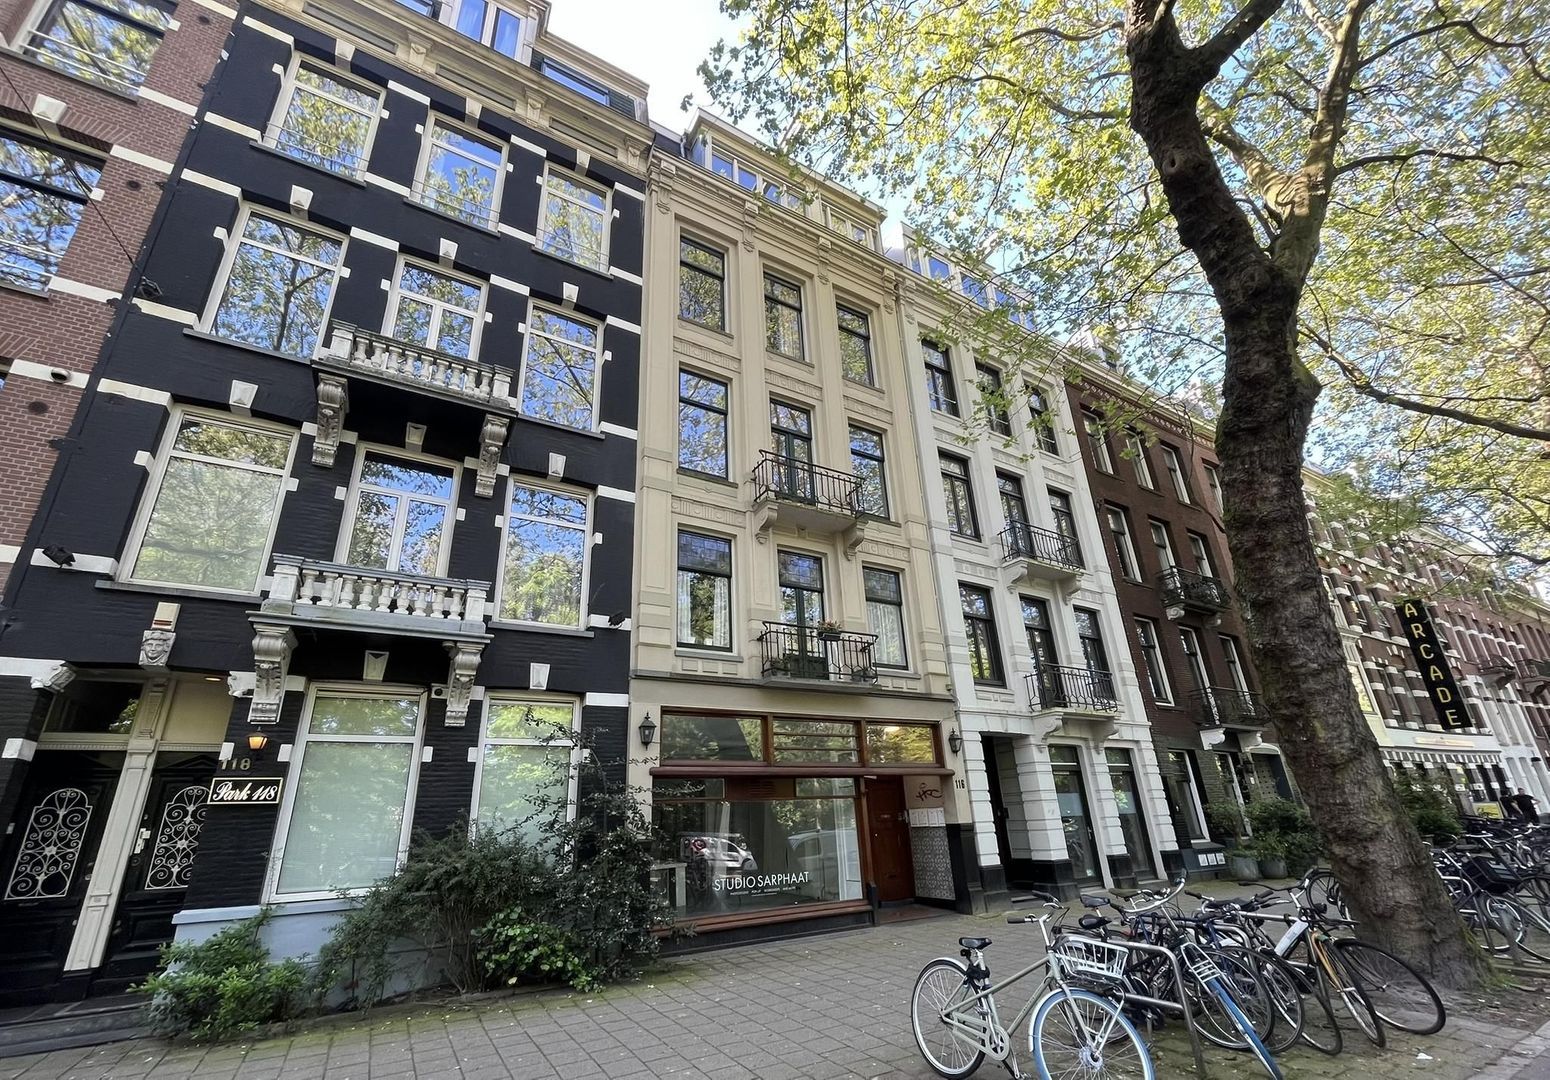 Bekijk foto 1/50 van apartment in Amsterdam